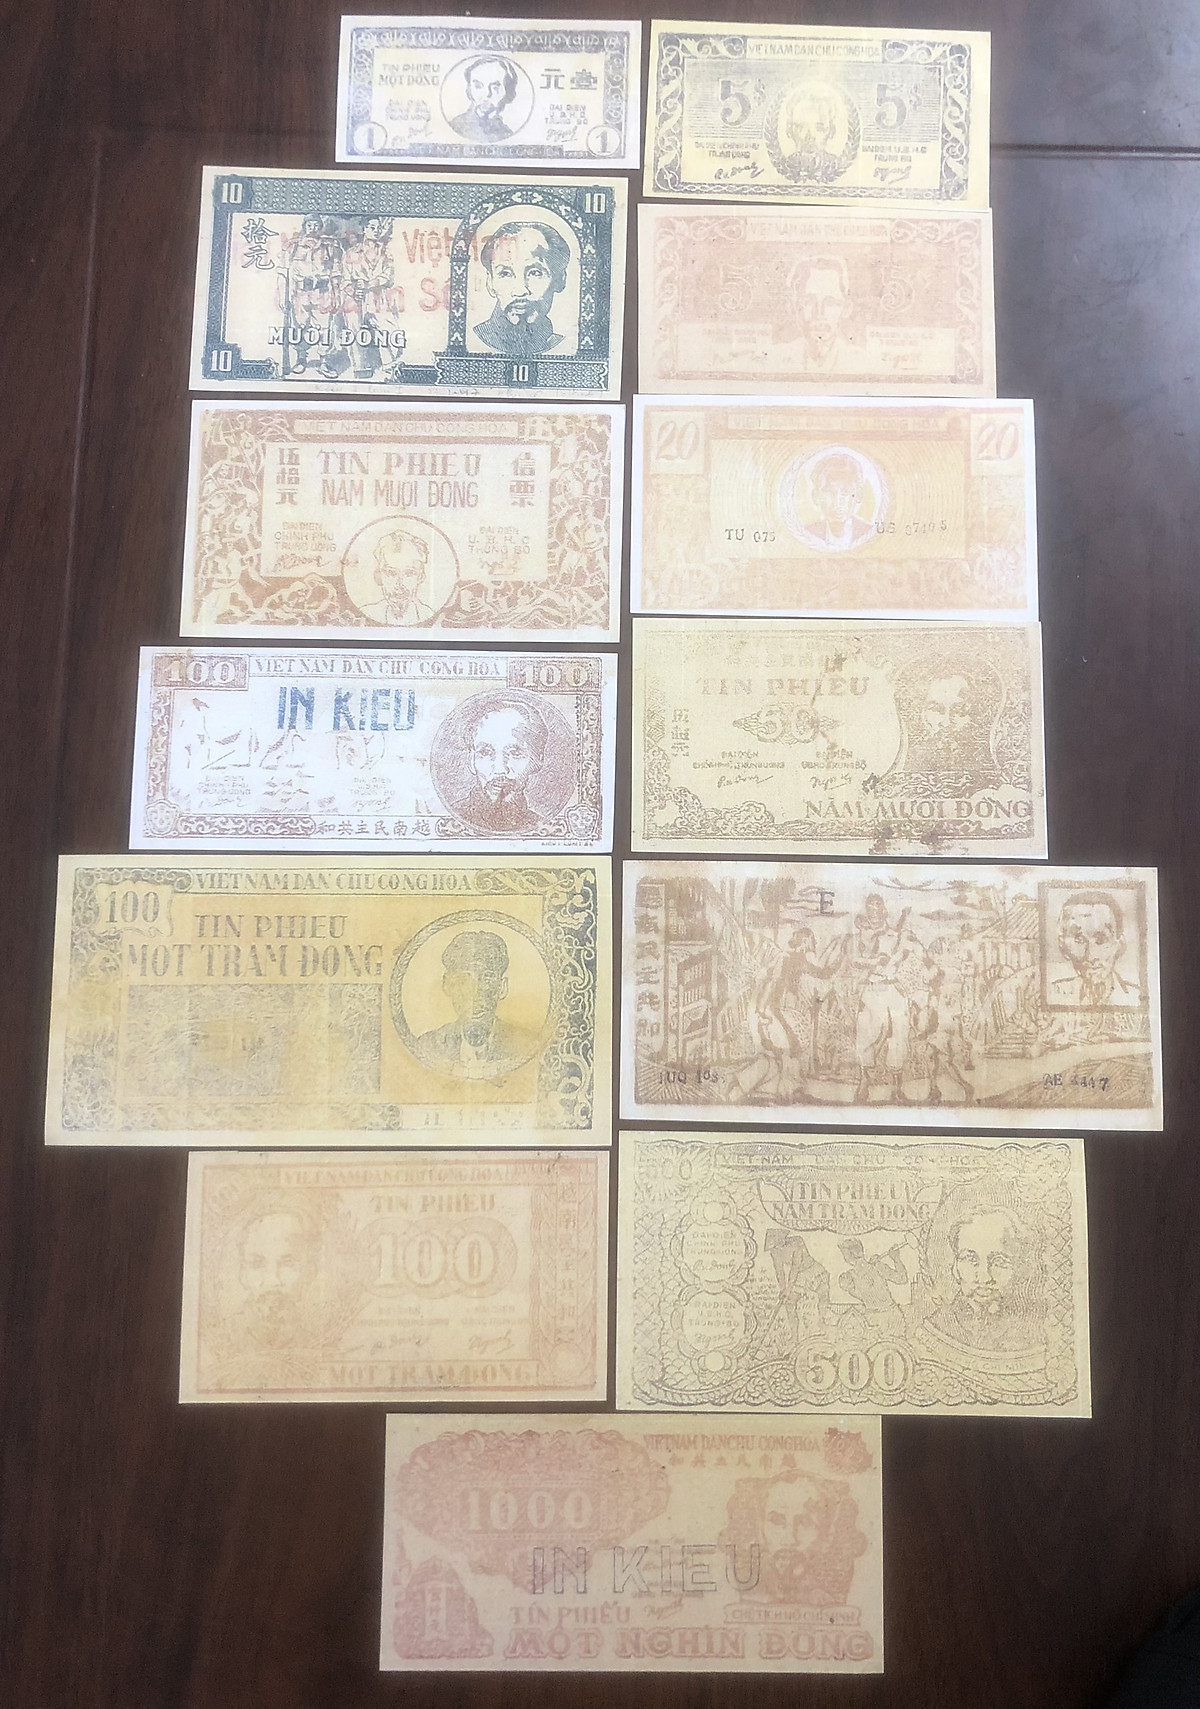 Bộ tiền tín phiếu giấy rơm cụ Hồ tiêu ở Miền Trung Việt Nam 13 mẫu khác nhau lưu niệm copy sưu tầm